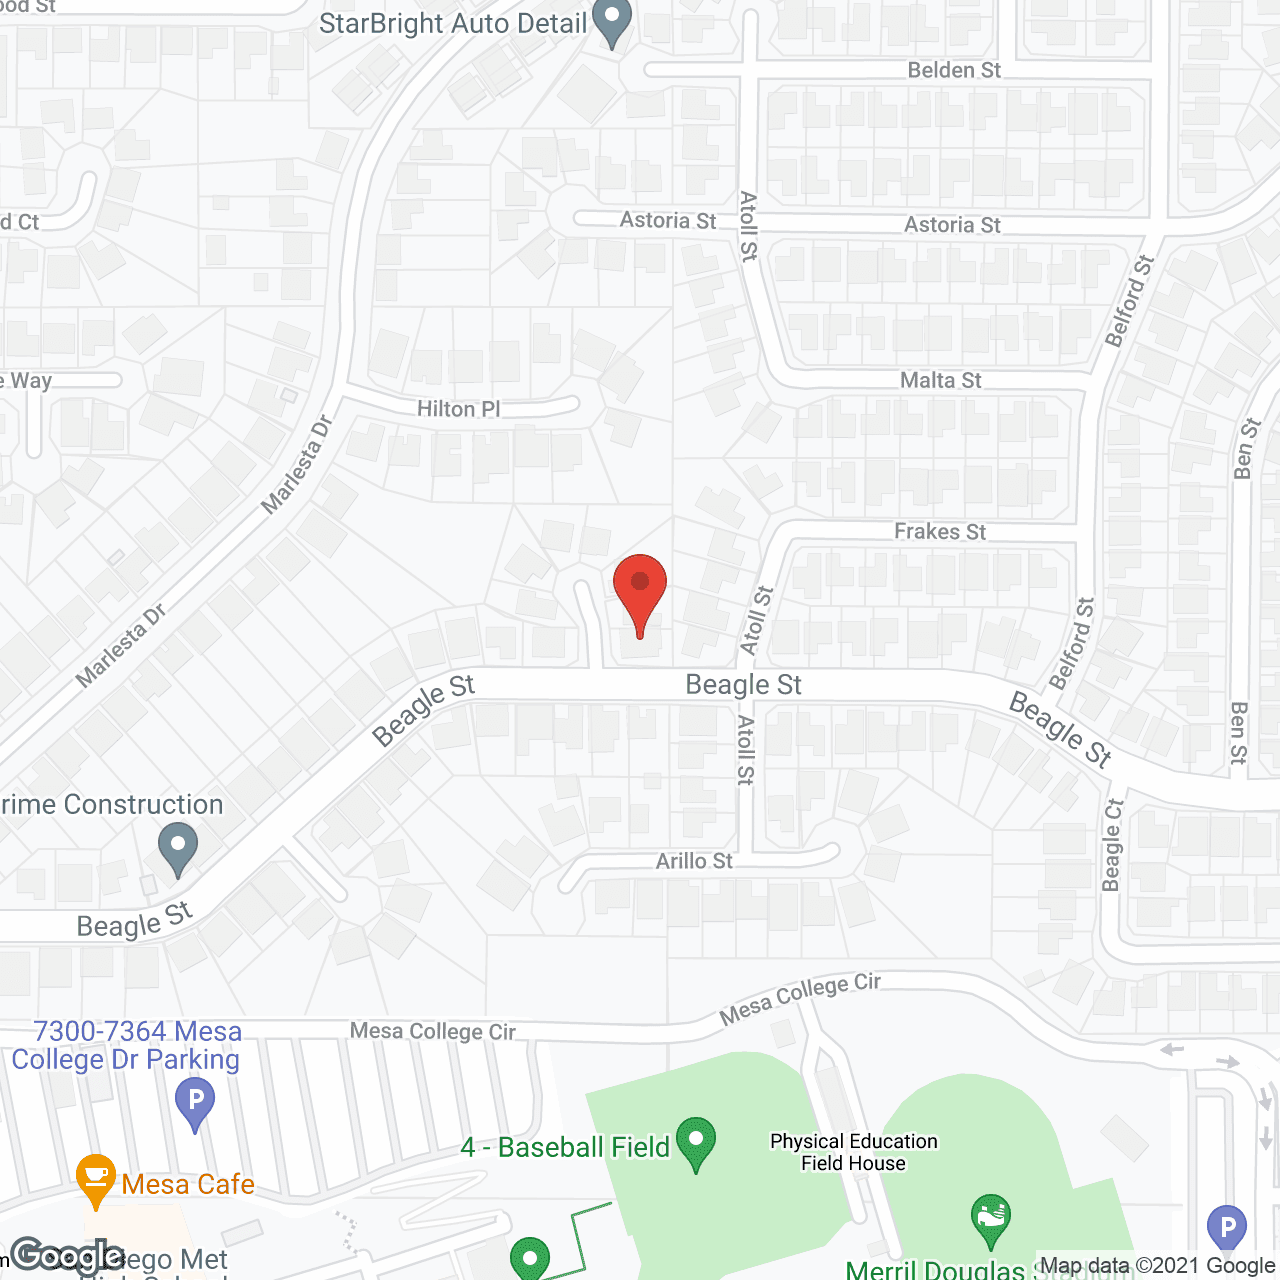 Carmona Residence in google map